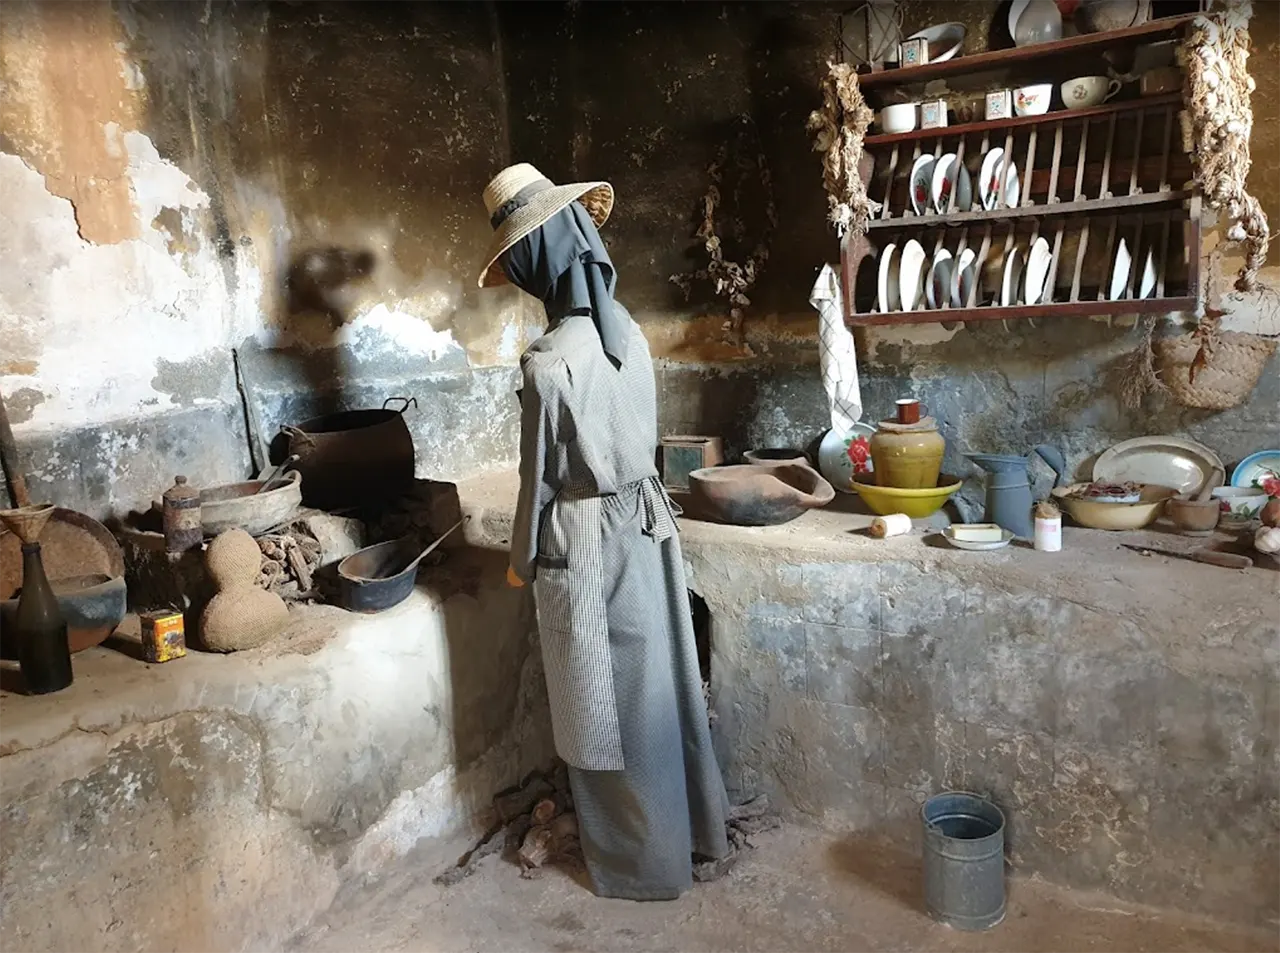 Сельскохозяйственный музей Эль-Патио (El Patio) на Лансароте